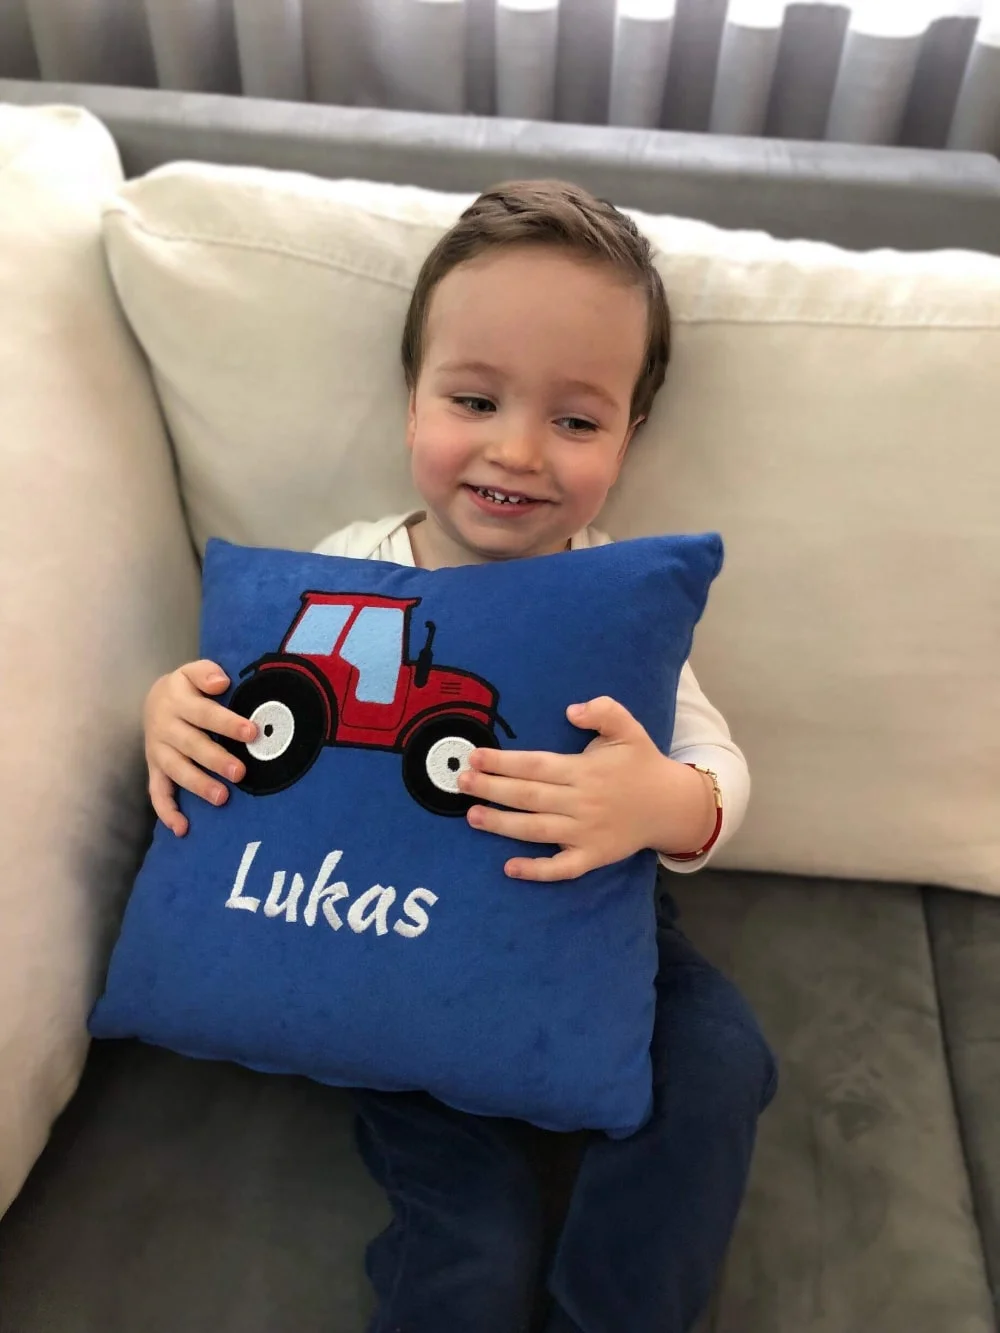 Dječak s ponosom pokazuje svoj personalizirani jastučić, s živopisnim dizajnom i svojim imenom.